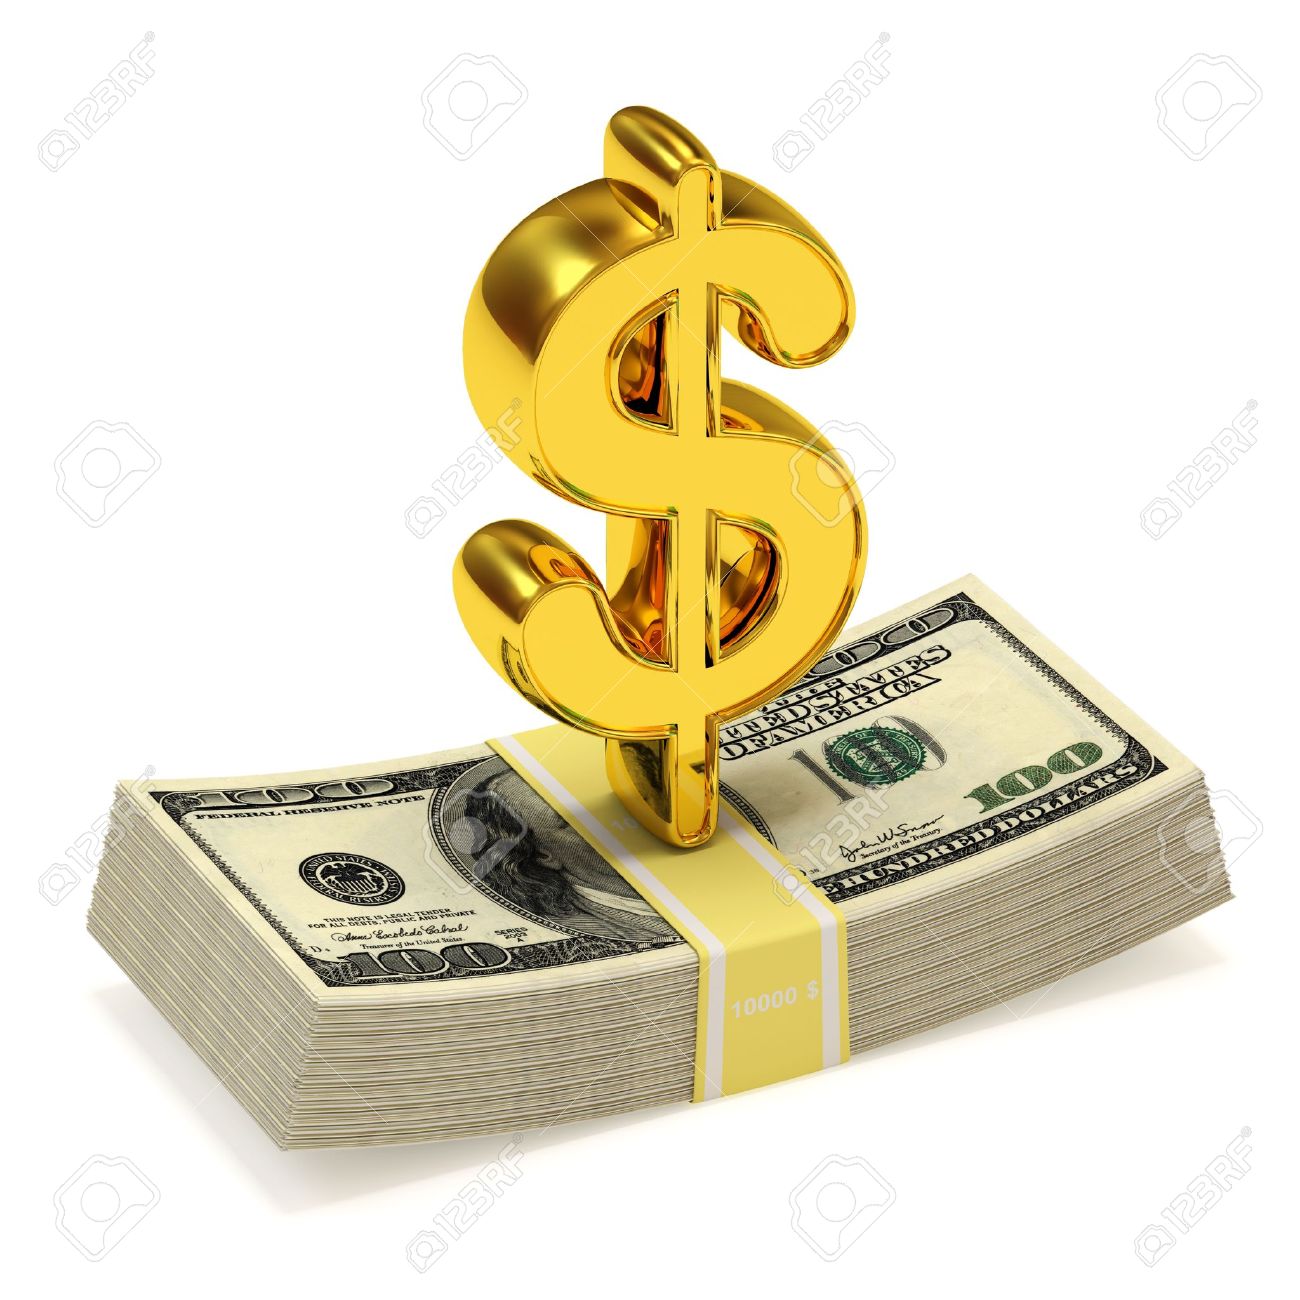 Money Dollar Sign Image - KibrisPDR